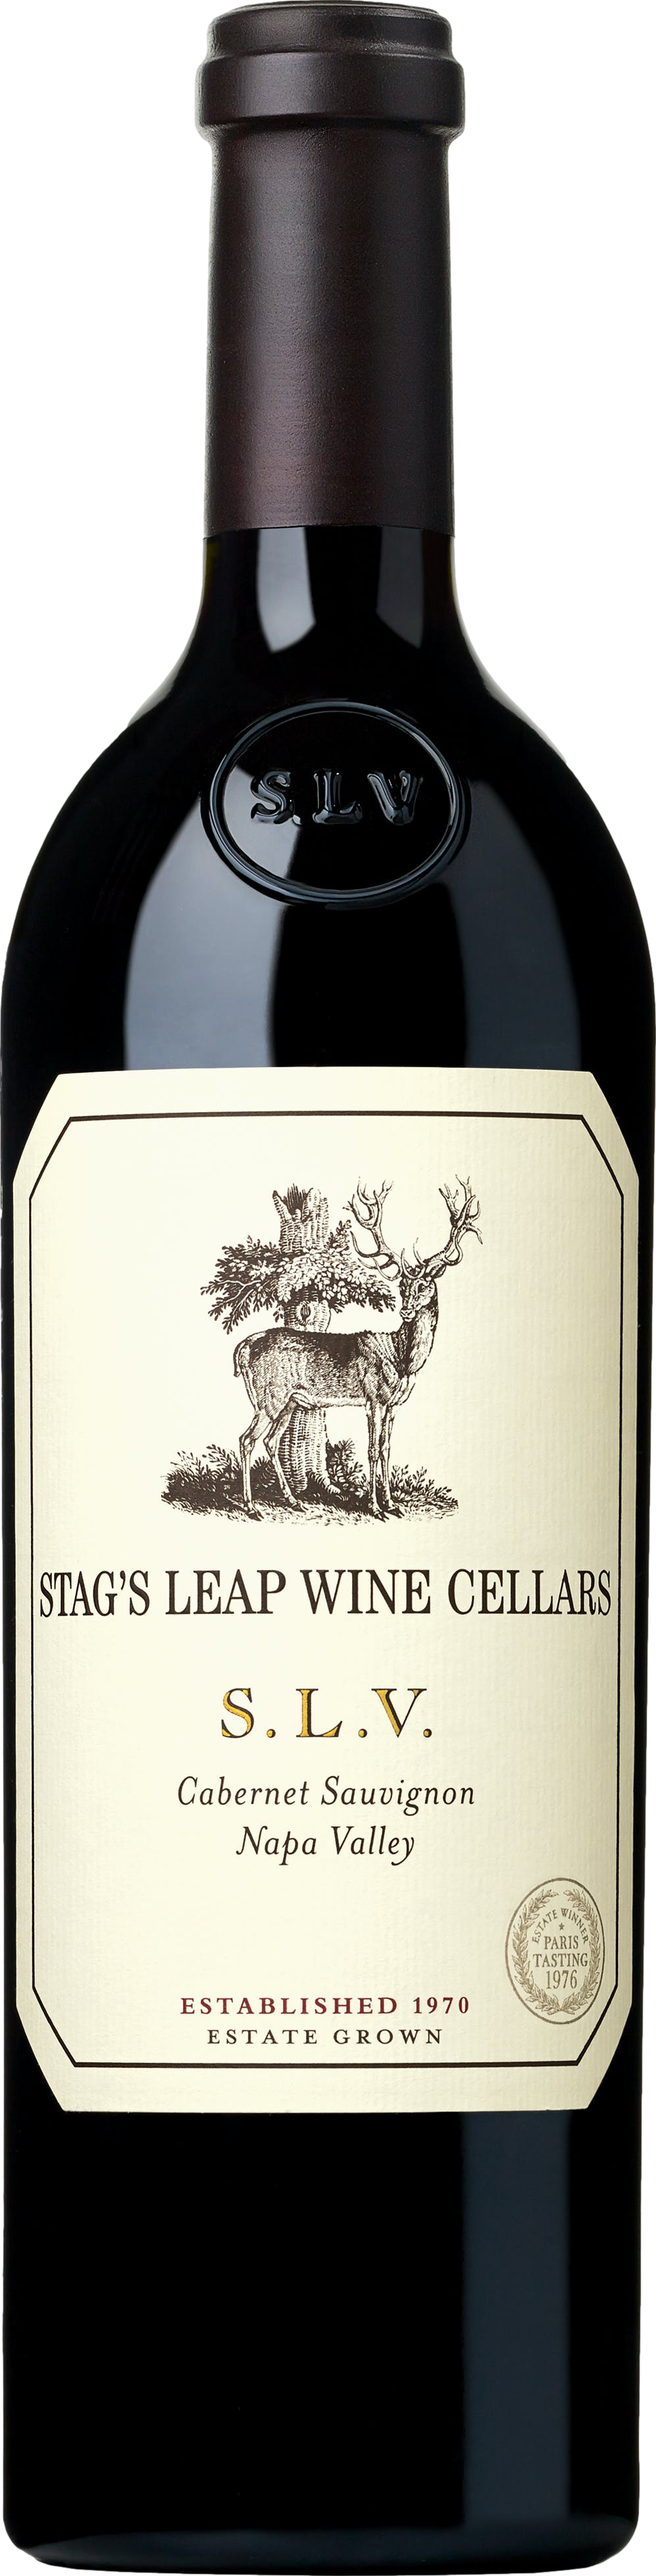 Stag's Leap Wine Cellars SLV Cabernet Sauvignon 2017 88593750069